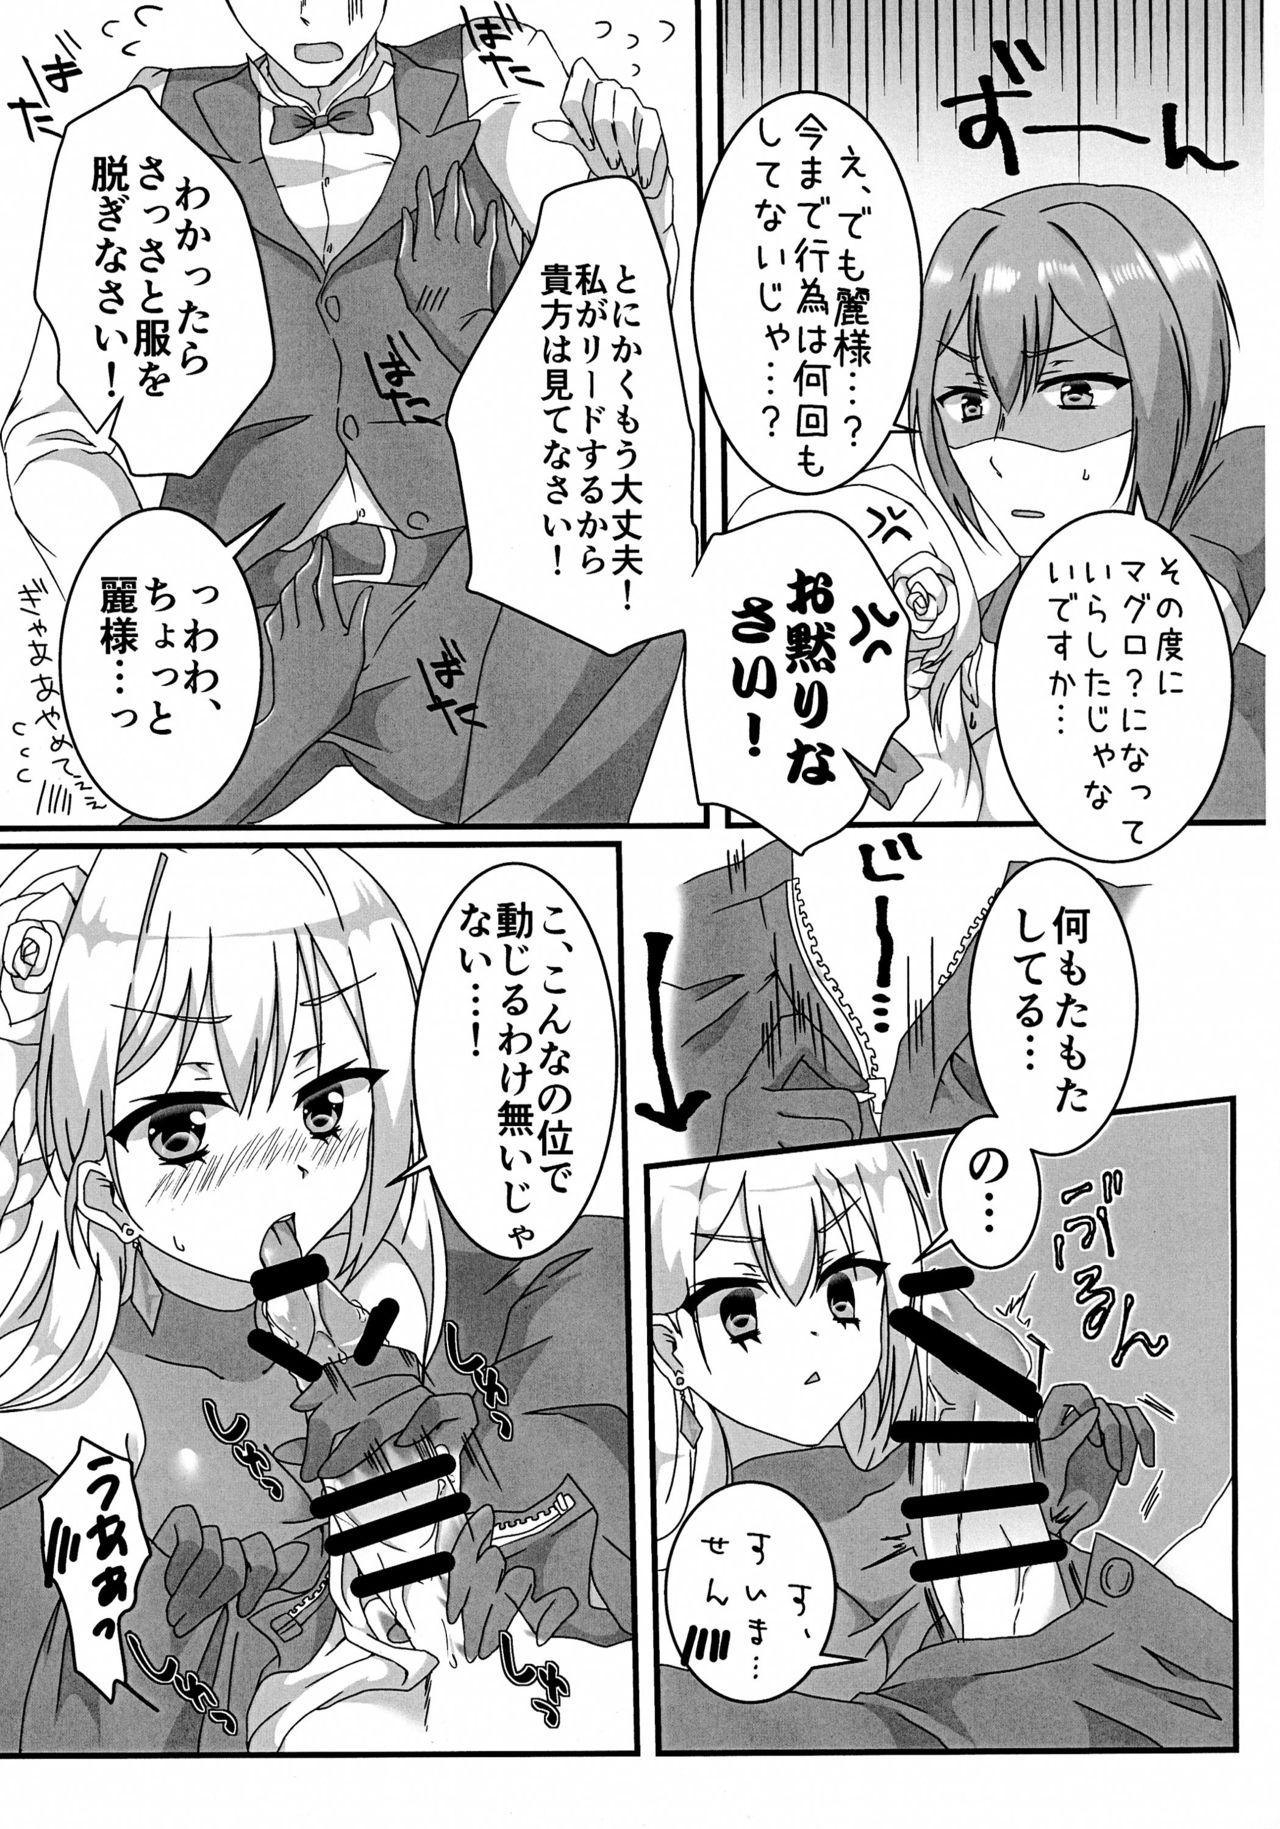 Hairy Ecchi na Ojou-sama wa suki desu ka? - Hidan no aria Bound - Page 7